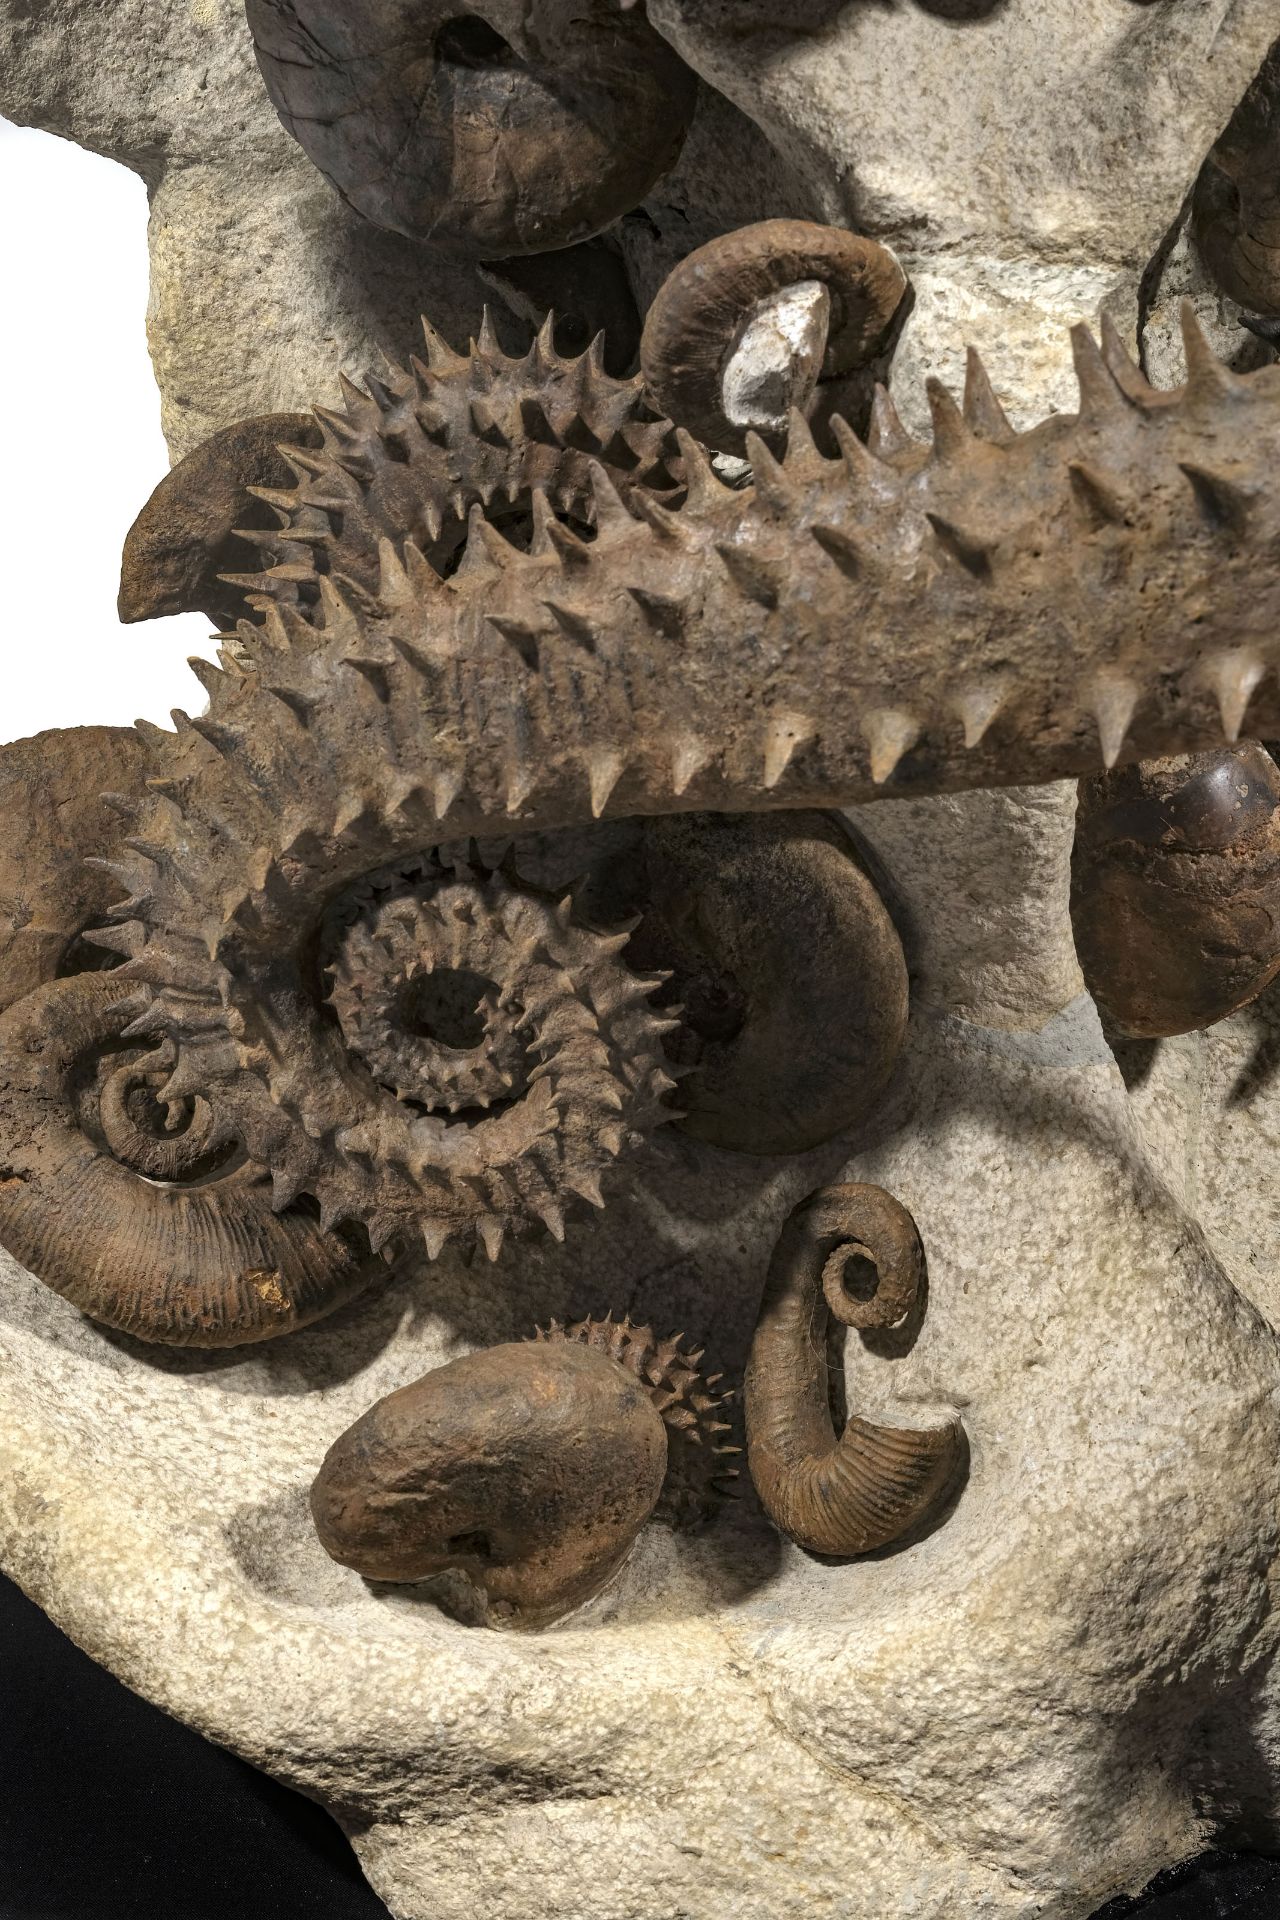 Cimetière marin d'ammonites déroulées épineuses, Maroc (région d'Agadir), h. 105 cm - Image 3 of 4